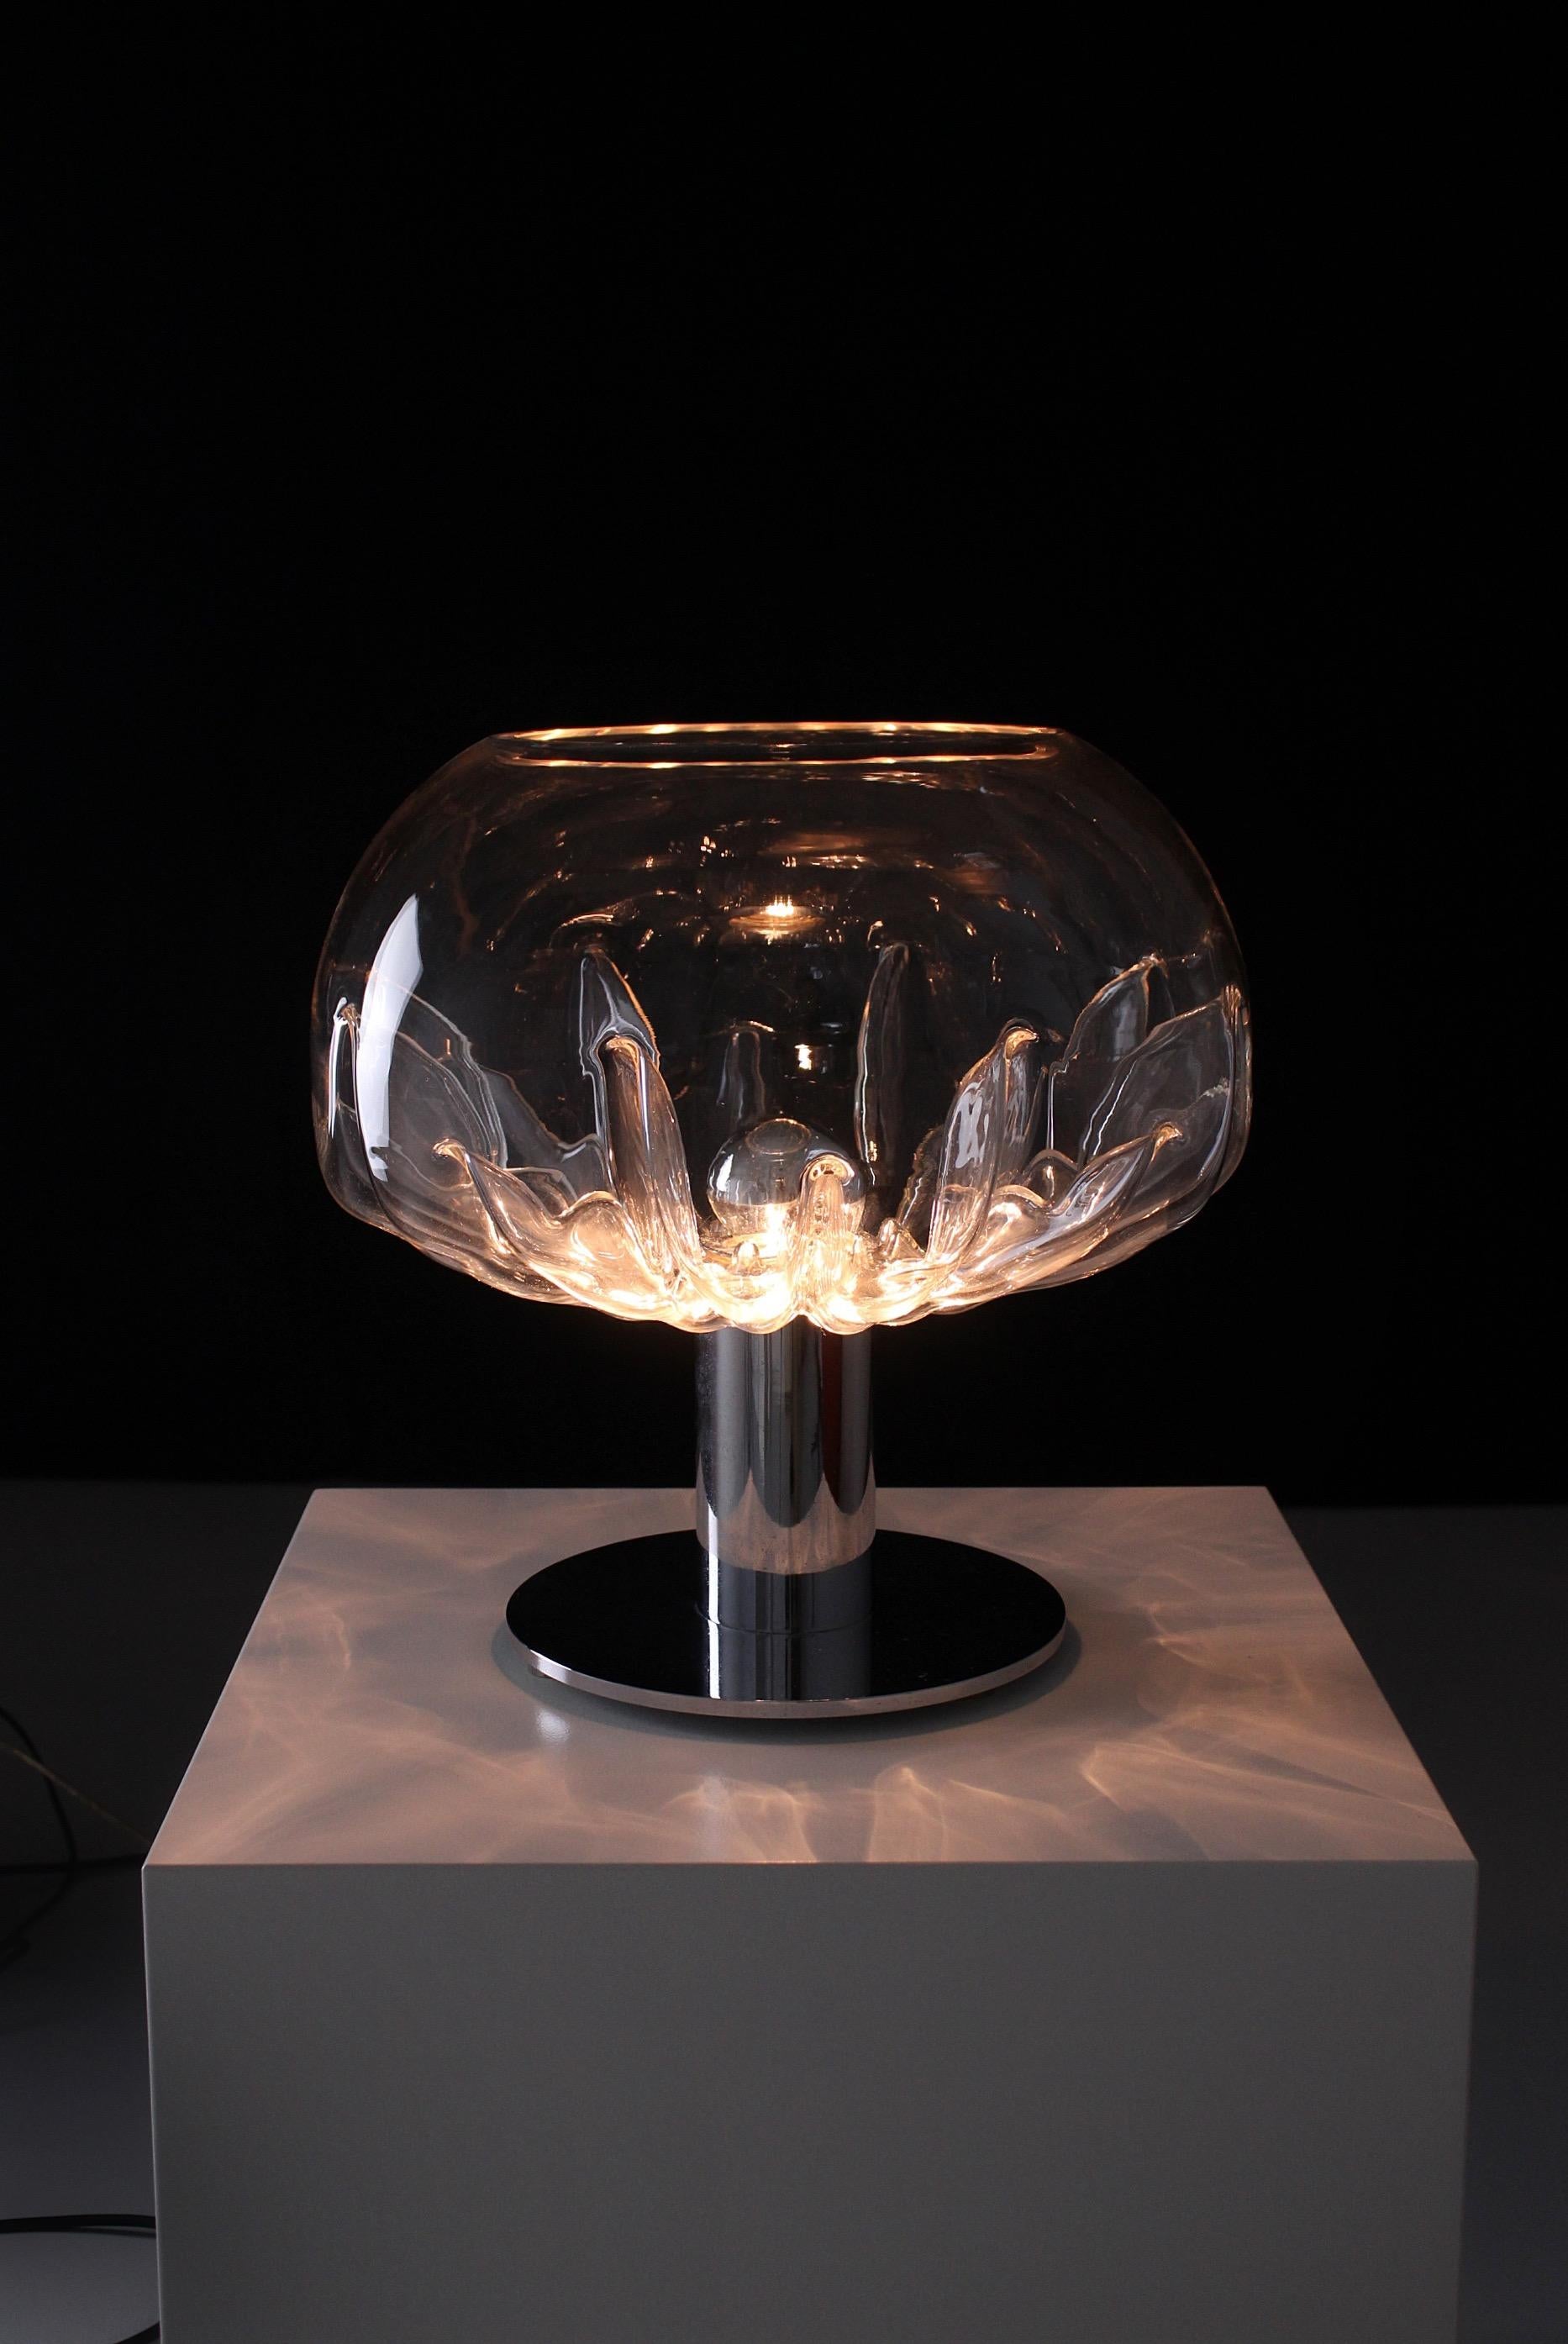 Rare lampe de table Zinia conçue par Toni Zuccheri en 1973. Produit par la verrerie VeArt à Scorze, en Italie. Cette lampe distinctive présente une multitude d'indentations, allant de la périphérie extérieure vers le cœur de la structure en verre,